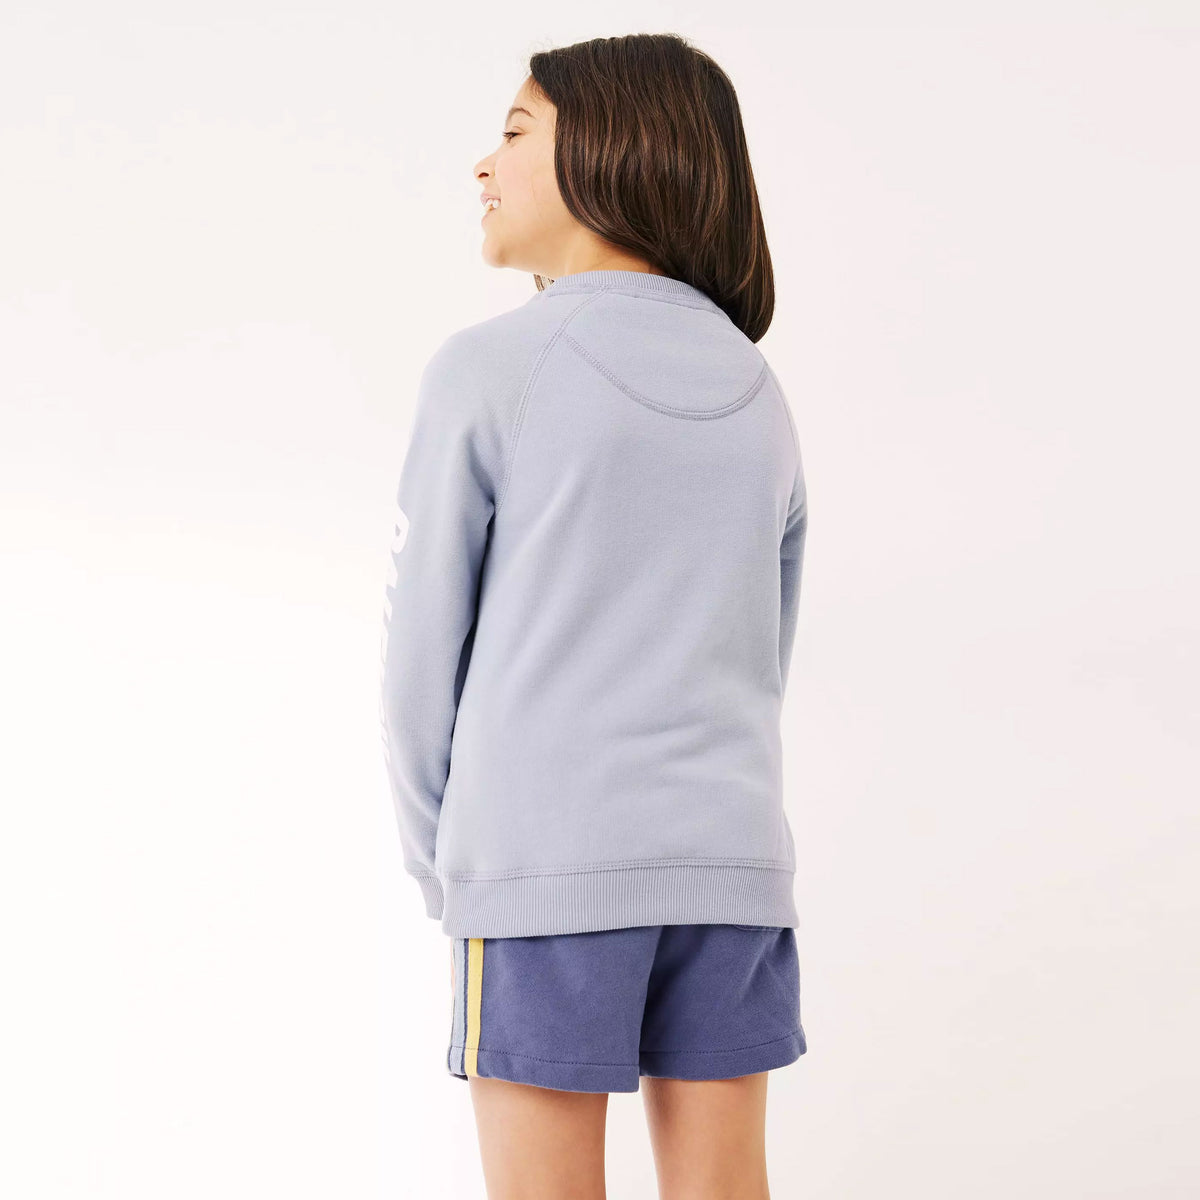 Girls Graphic Fleece Sweatshirt Minor Fault